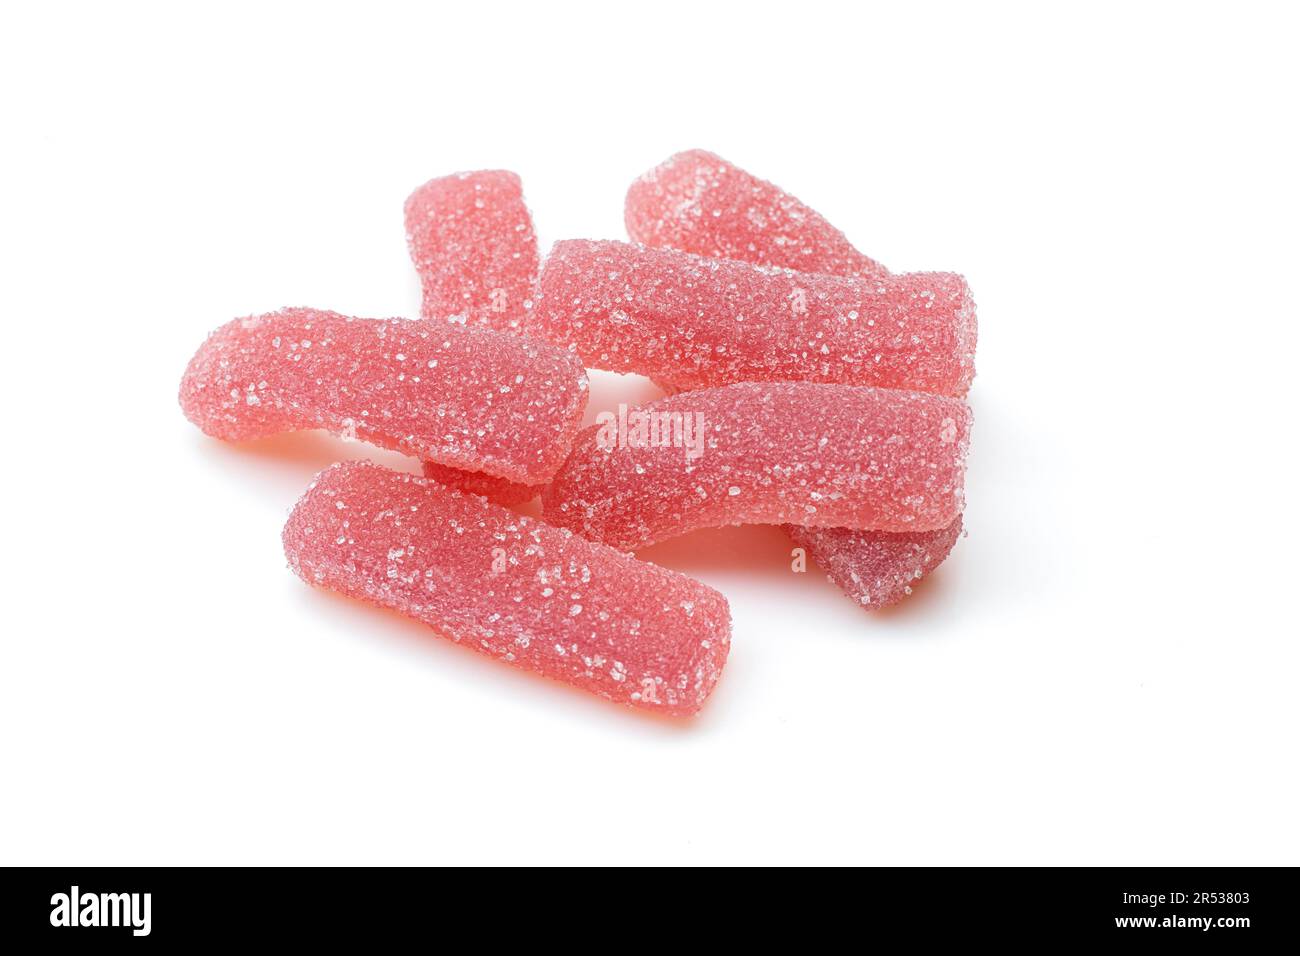 Mucchio di caramelle rosse zuccherate isolate su sfondo bianco. I vermi gommosi curano Foto Stock